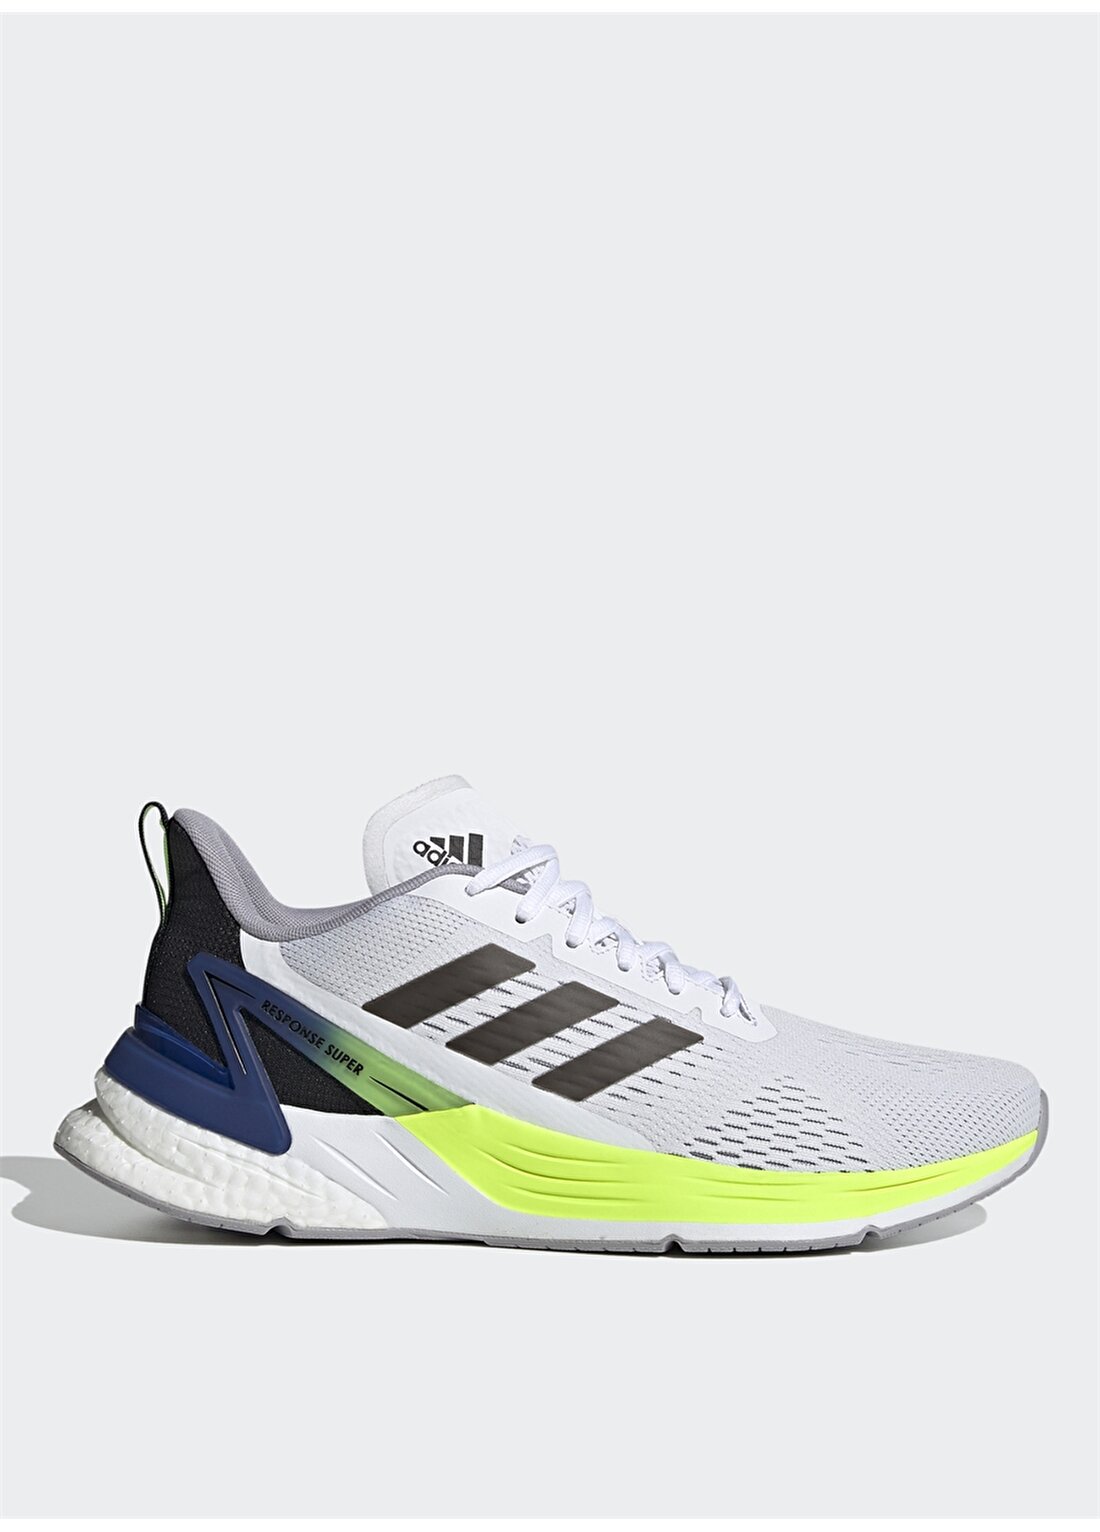 Adidas FX4832 Response Super Beyaz Erkek Koşu Ayakkabısı